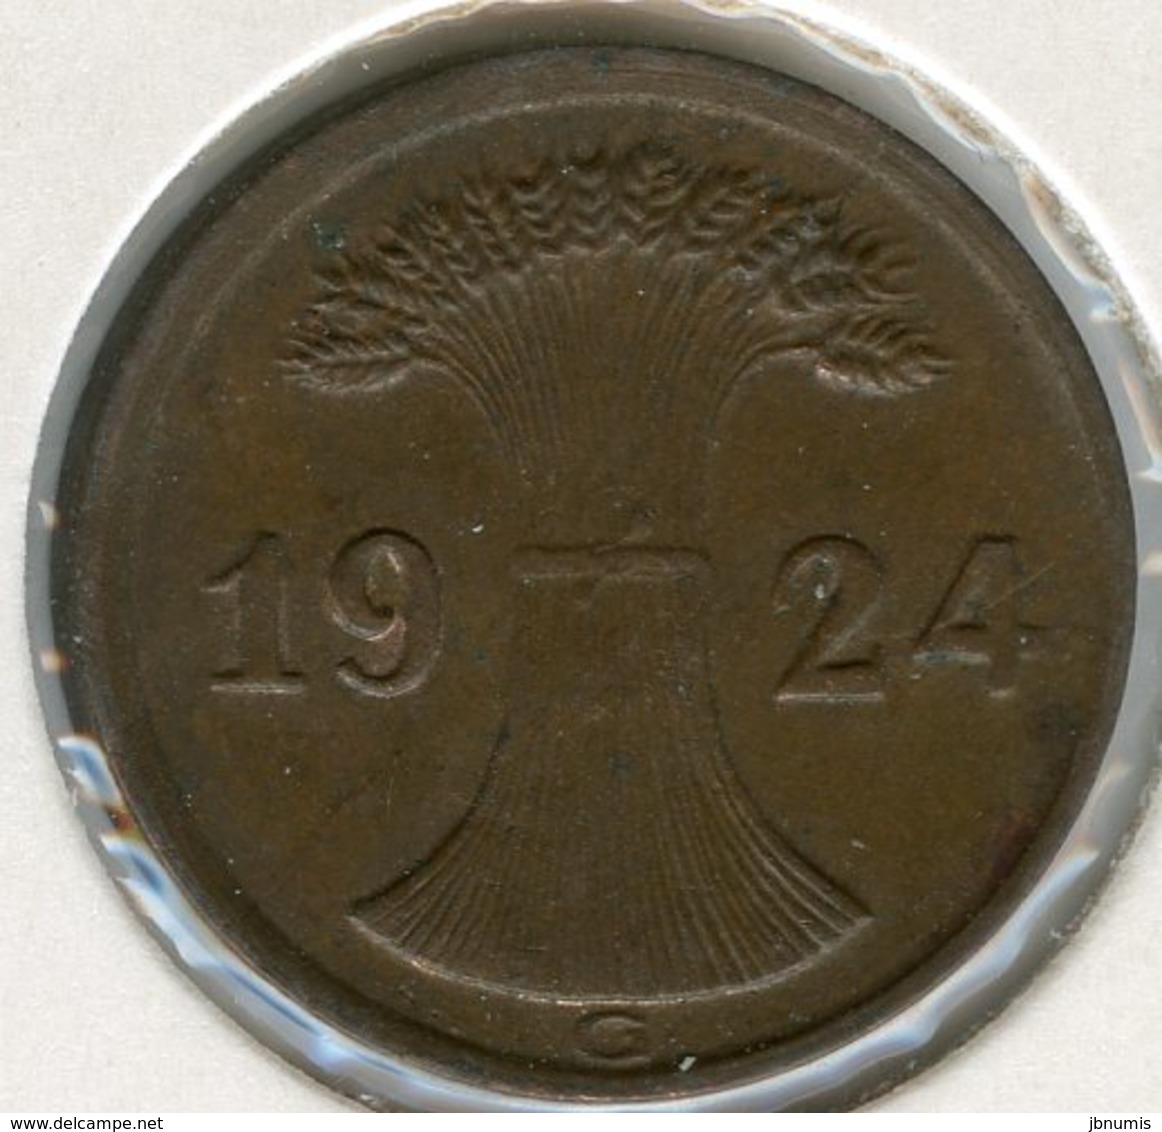 Allemagne Germany 2 Rentenpfennig 1924 G J 307 KM 31 - 2 Renten- & 2 Reichspfennig